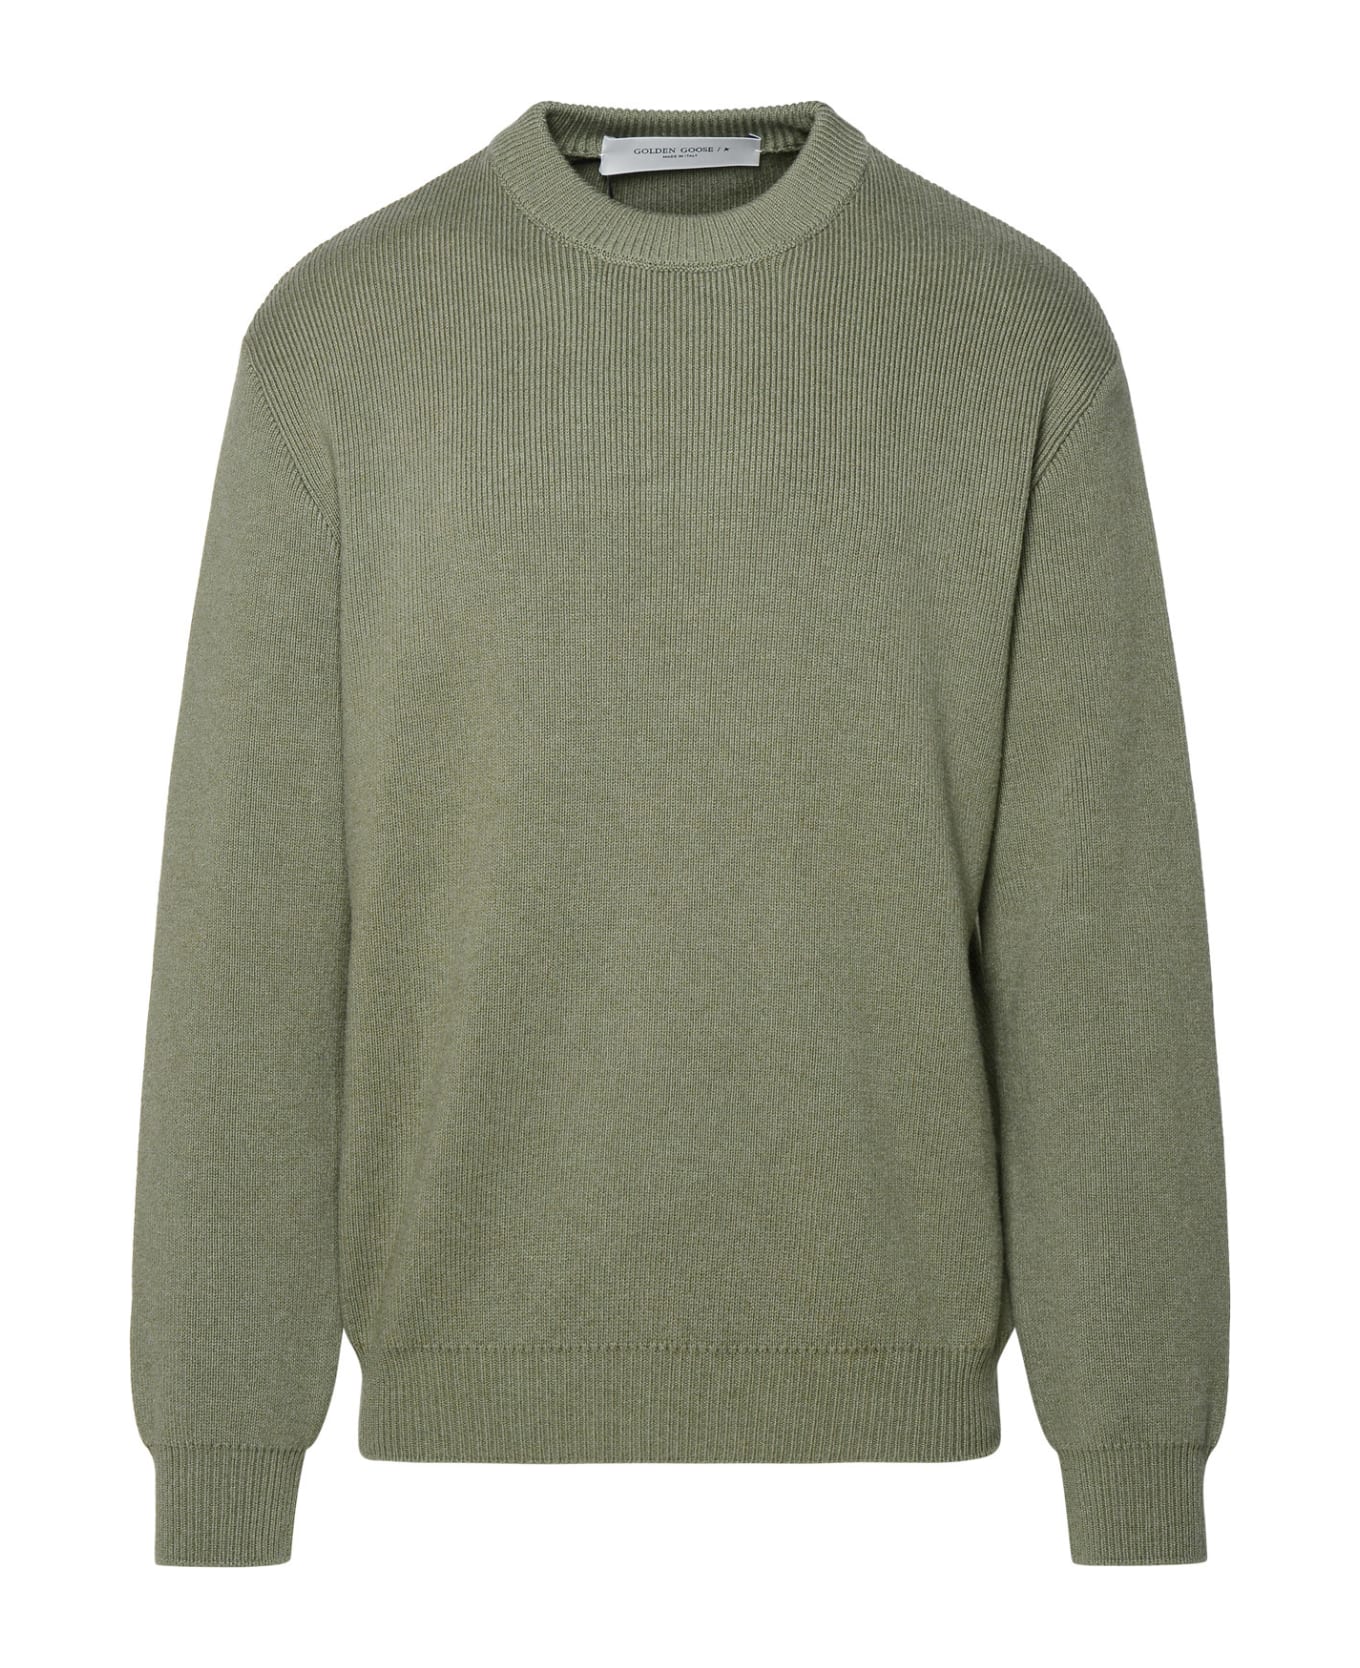 Golden Goose Green Cotton Blend Sweater - Green ニットウェア